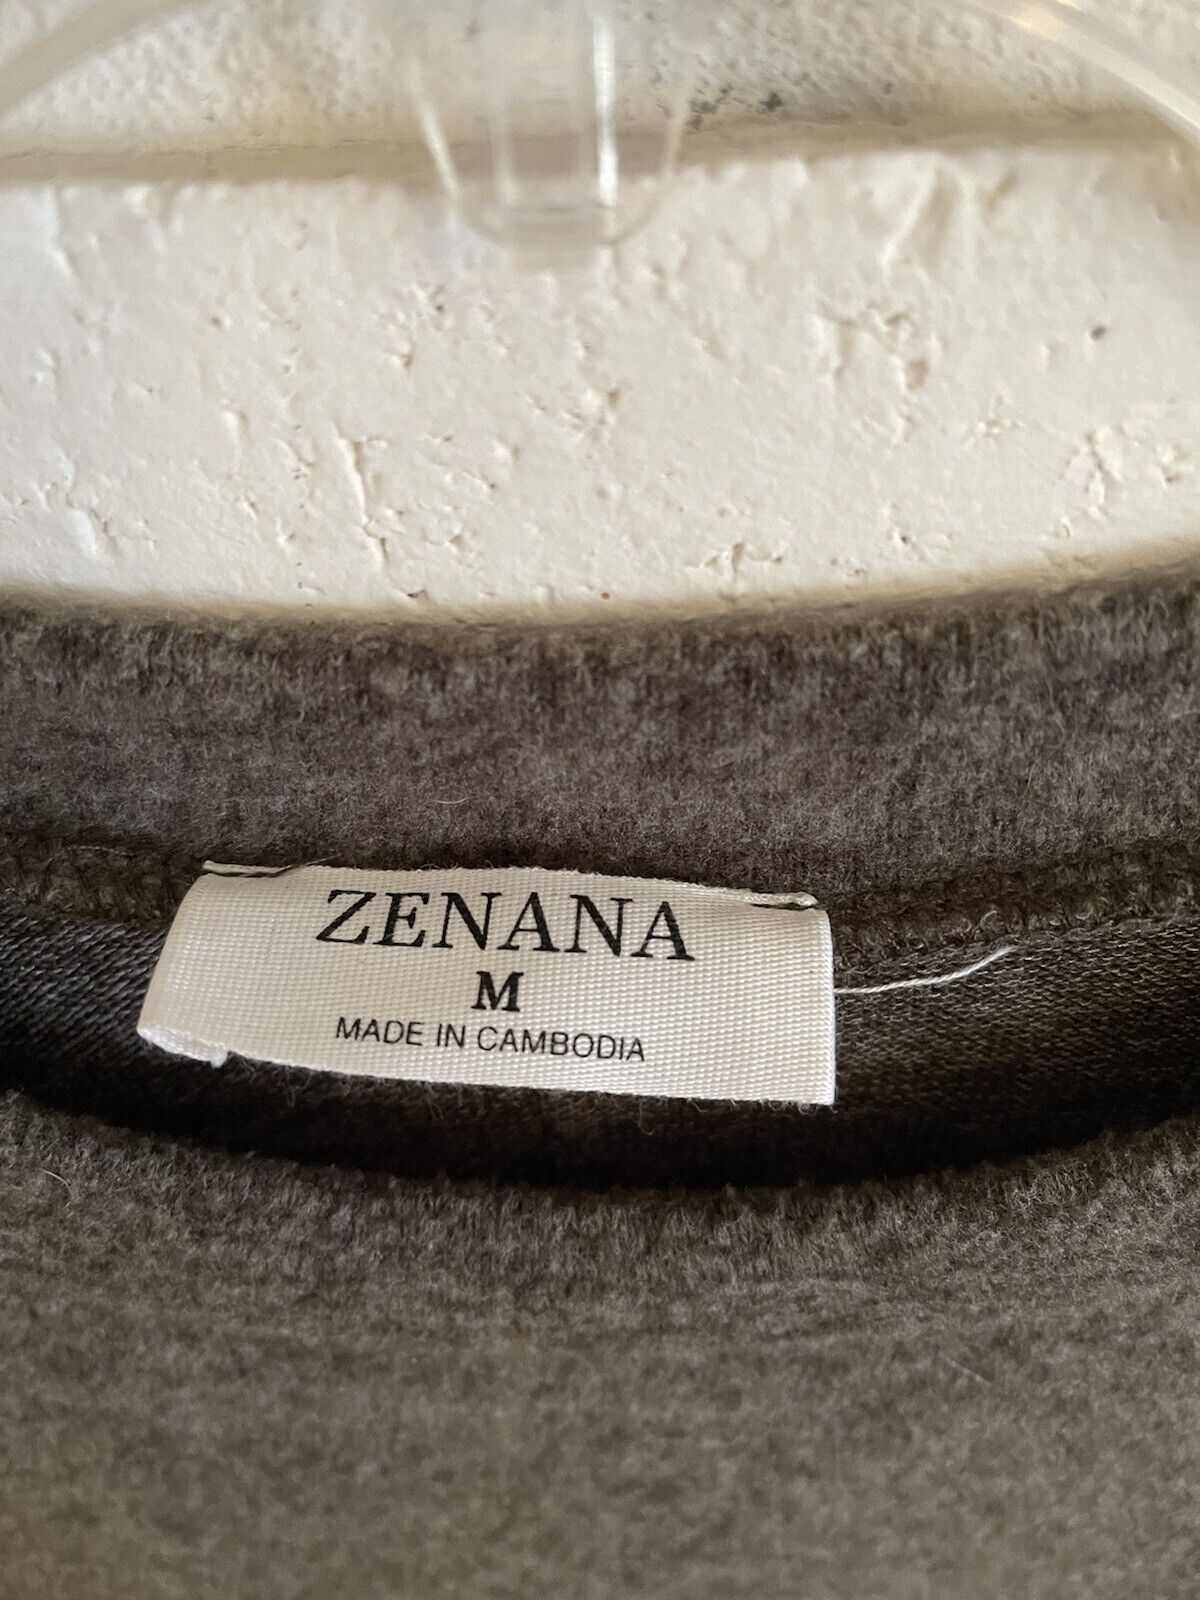 Zenana Womens Top Size Med. Drop Shoulder Soft Gr… - image 3